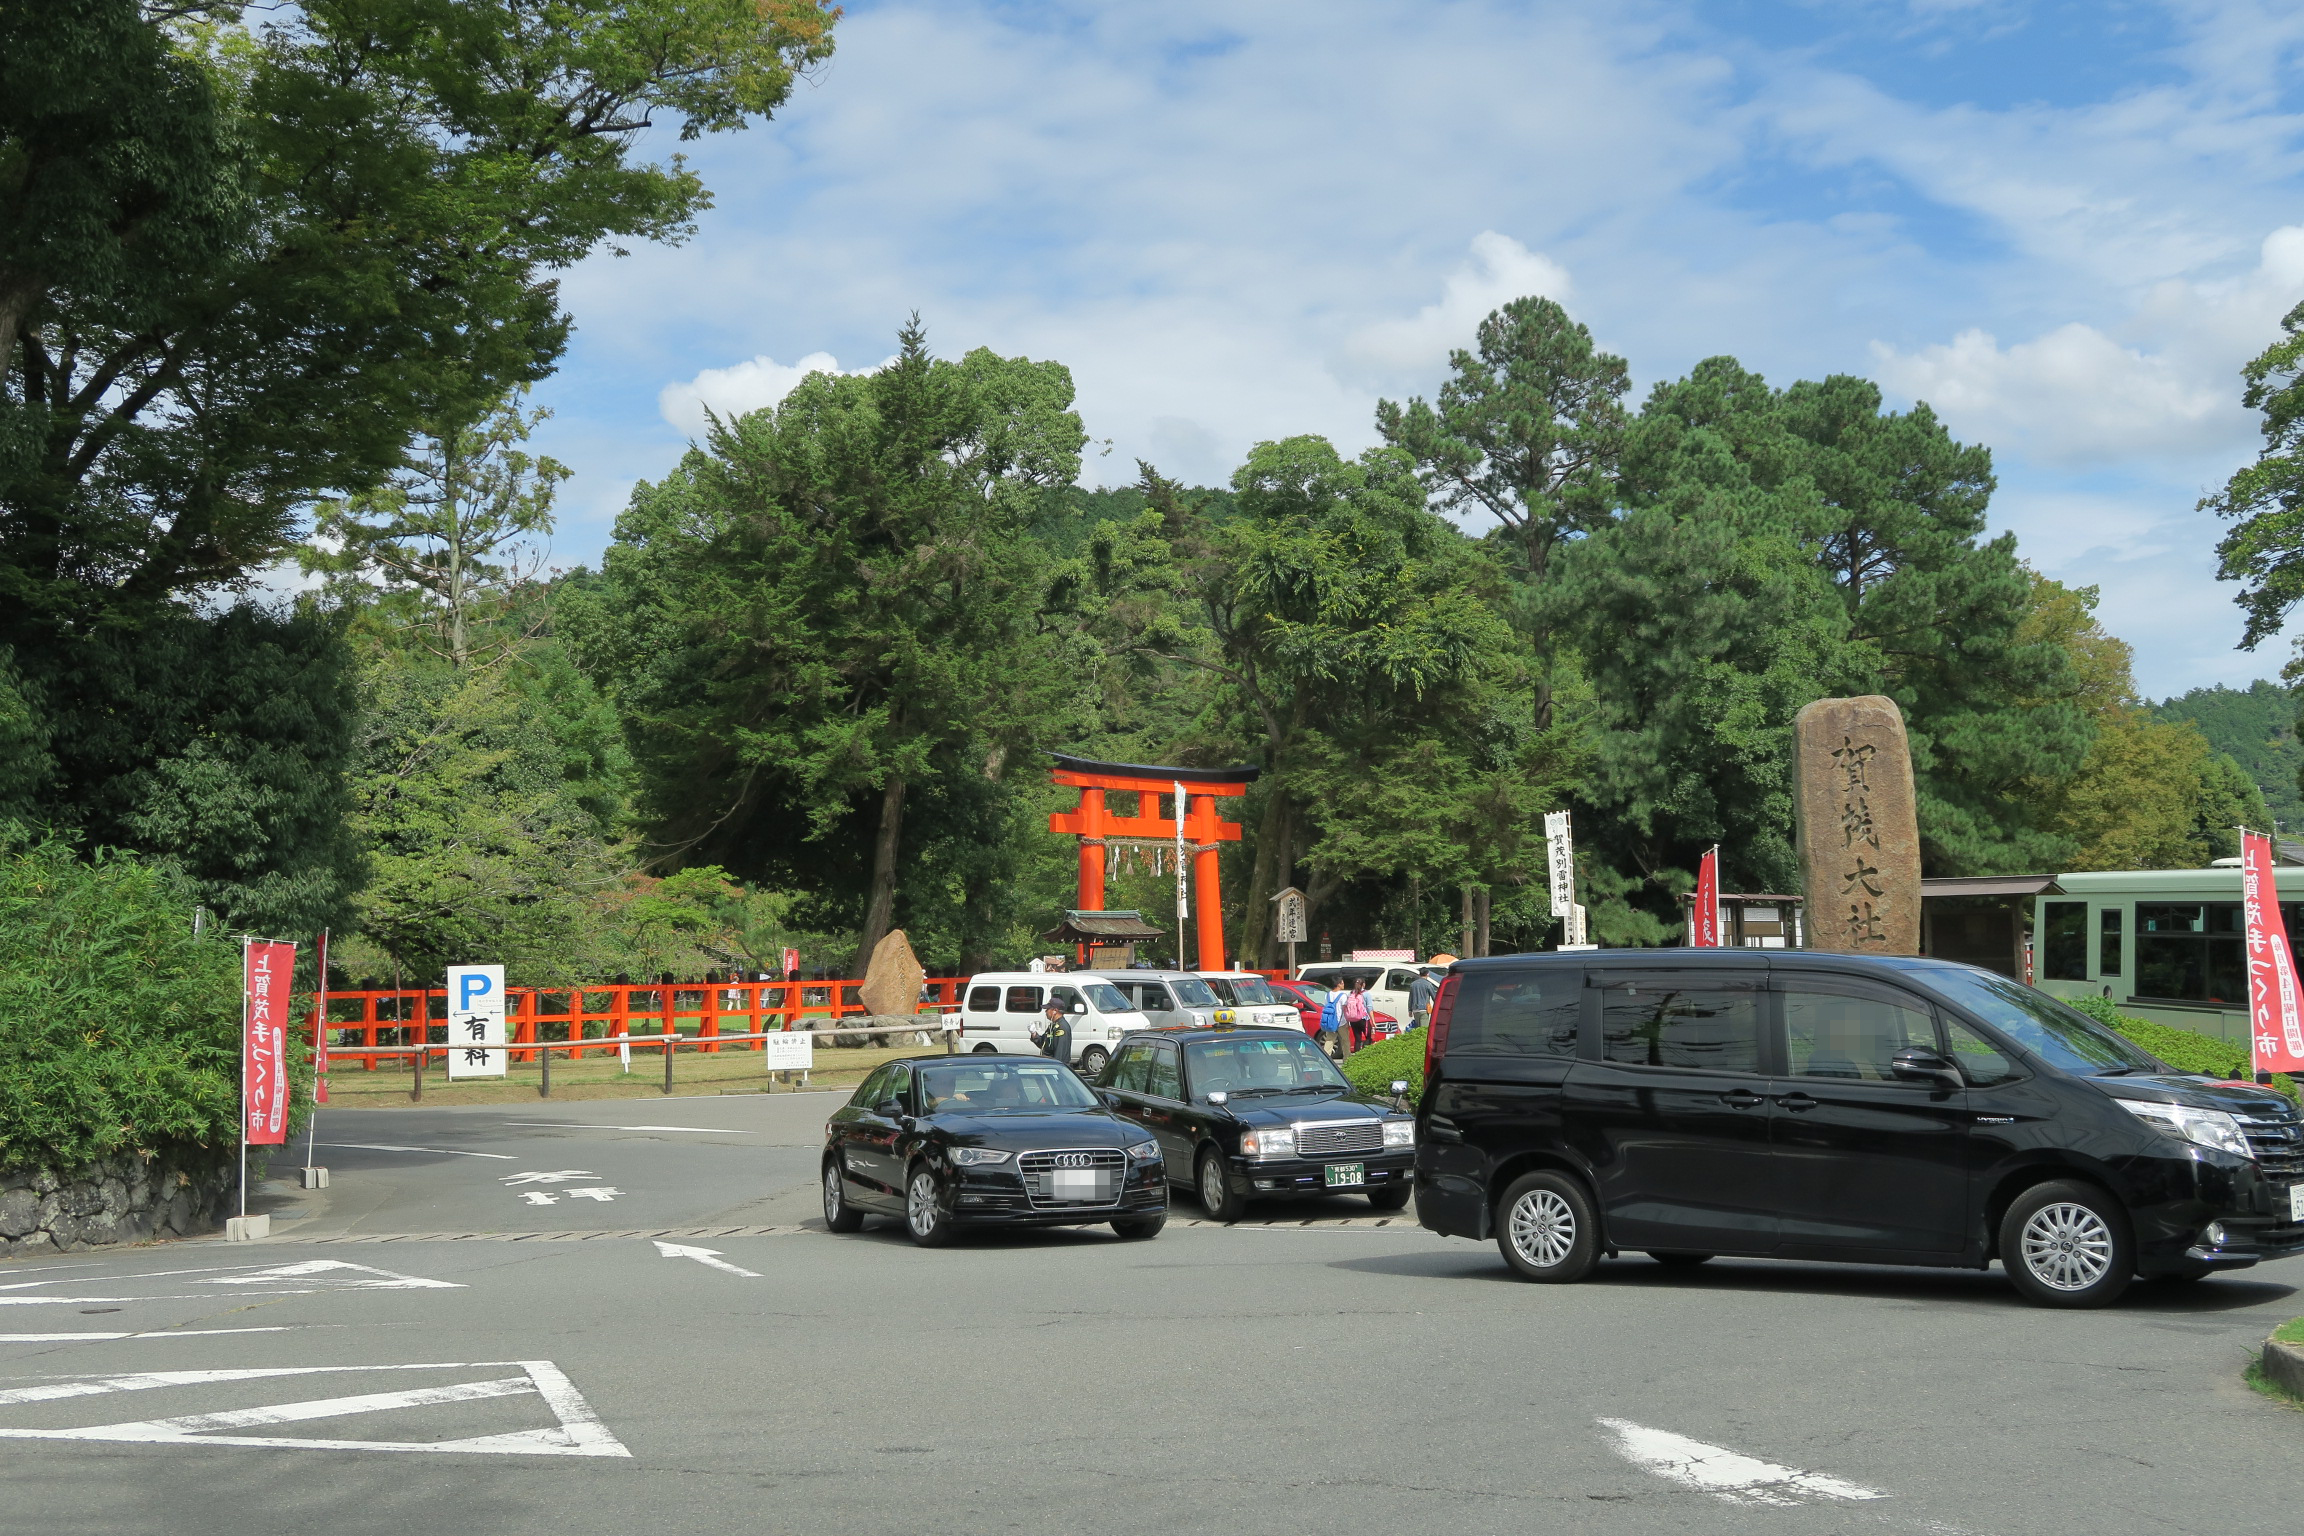 上賀茂神社。鳥居の奥が「手つくり市」の会場。初めてで会場がわからず、神社横の道を歩いてしましました。